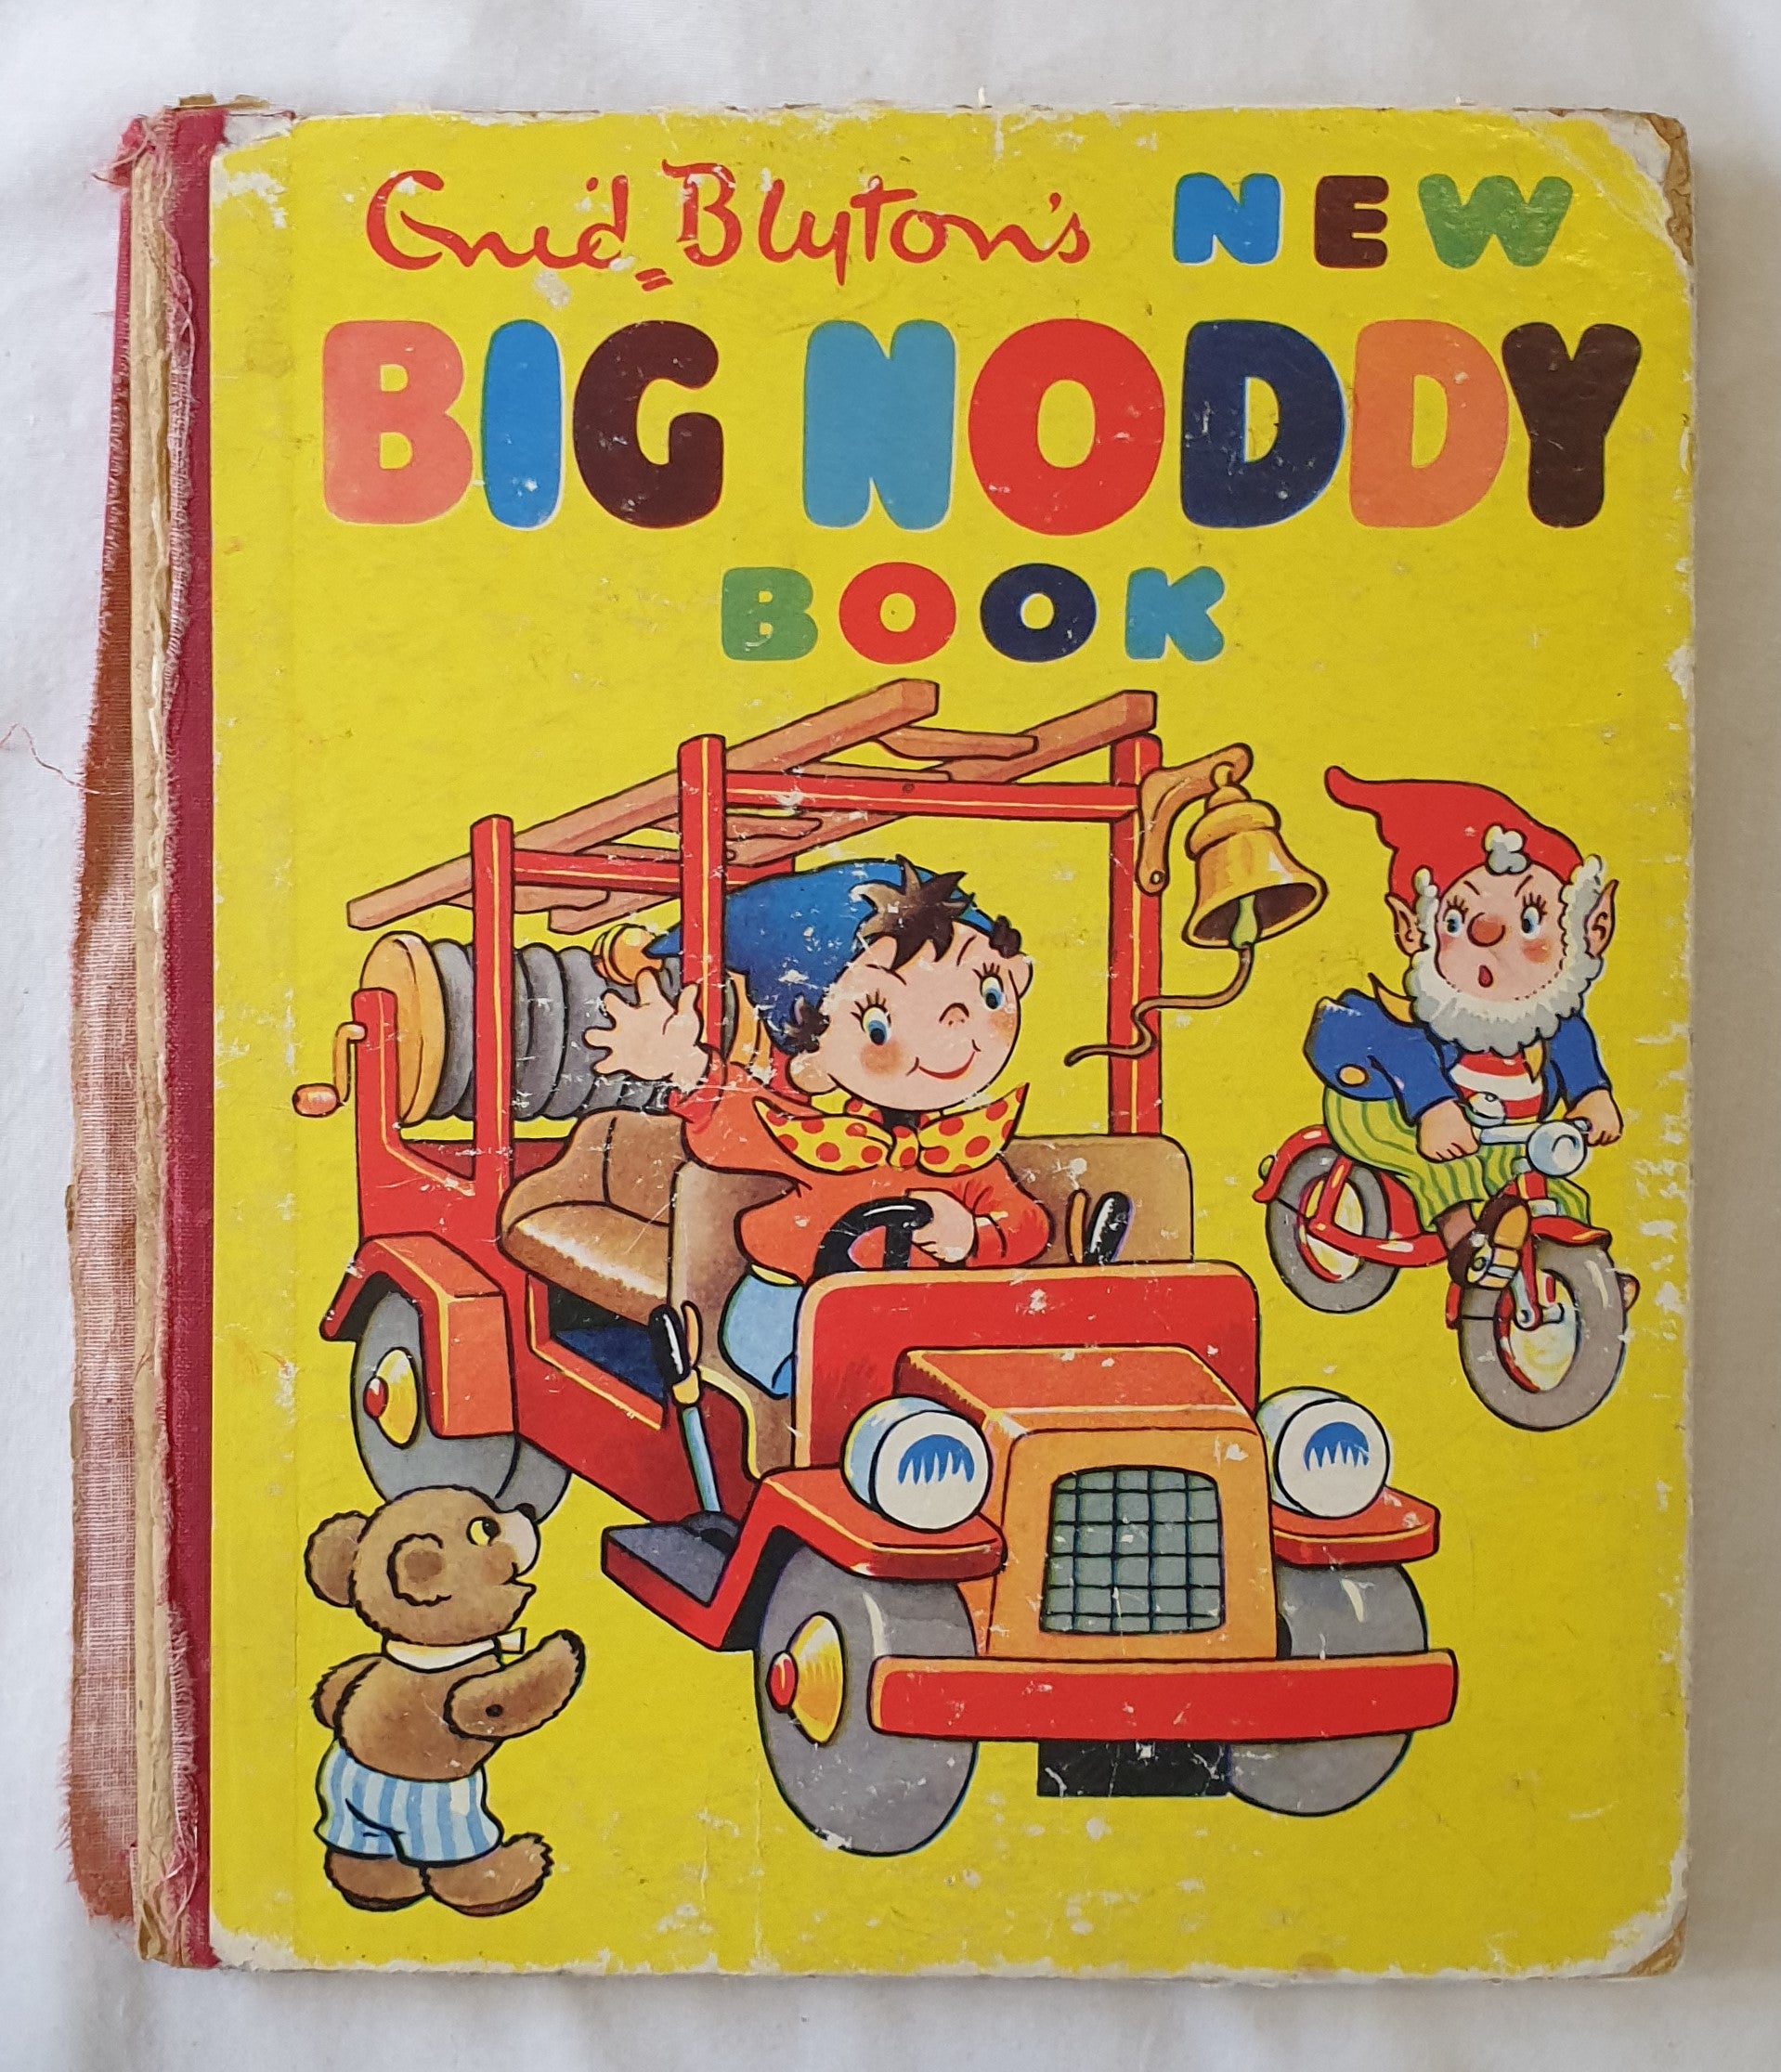 The New Big Noddy Book by Enid Blyton